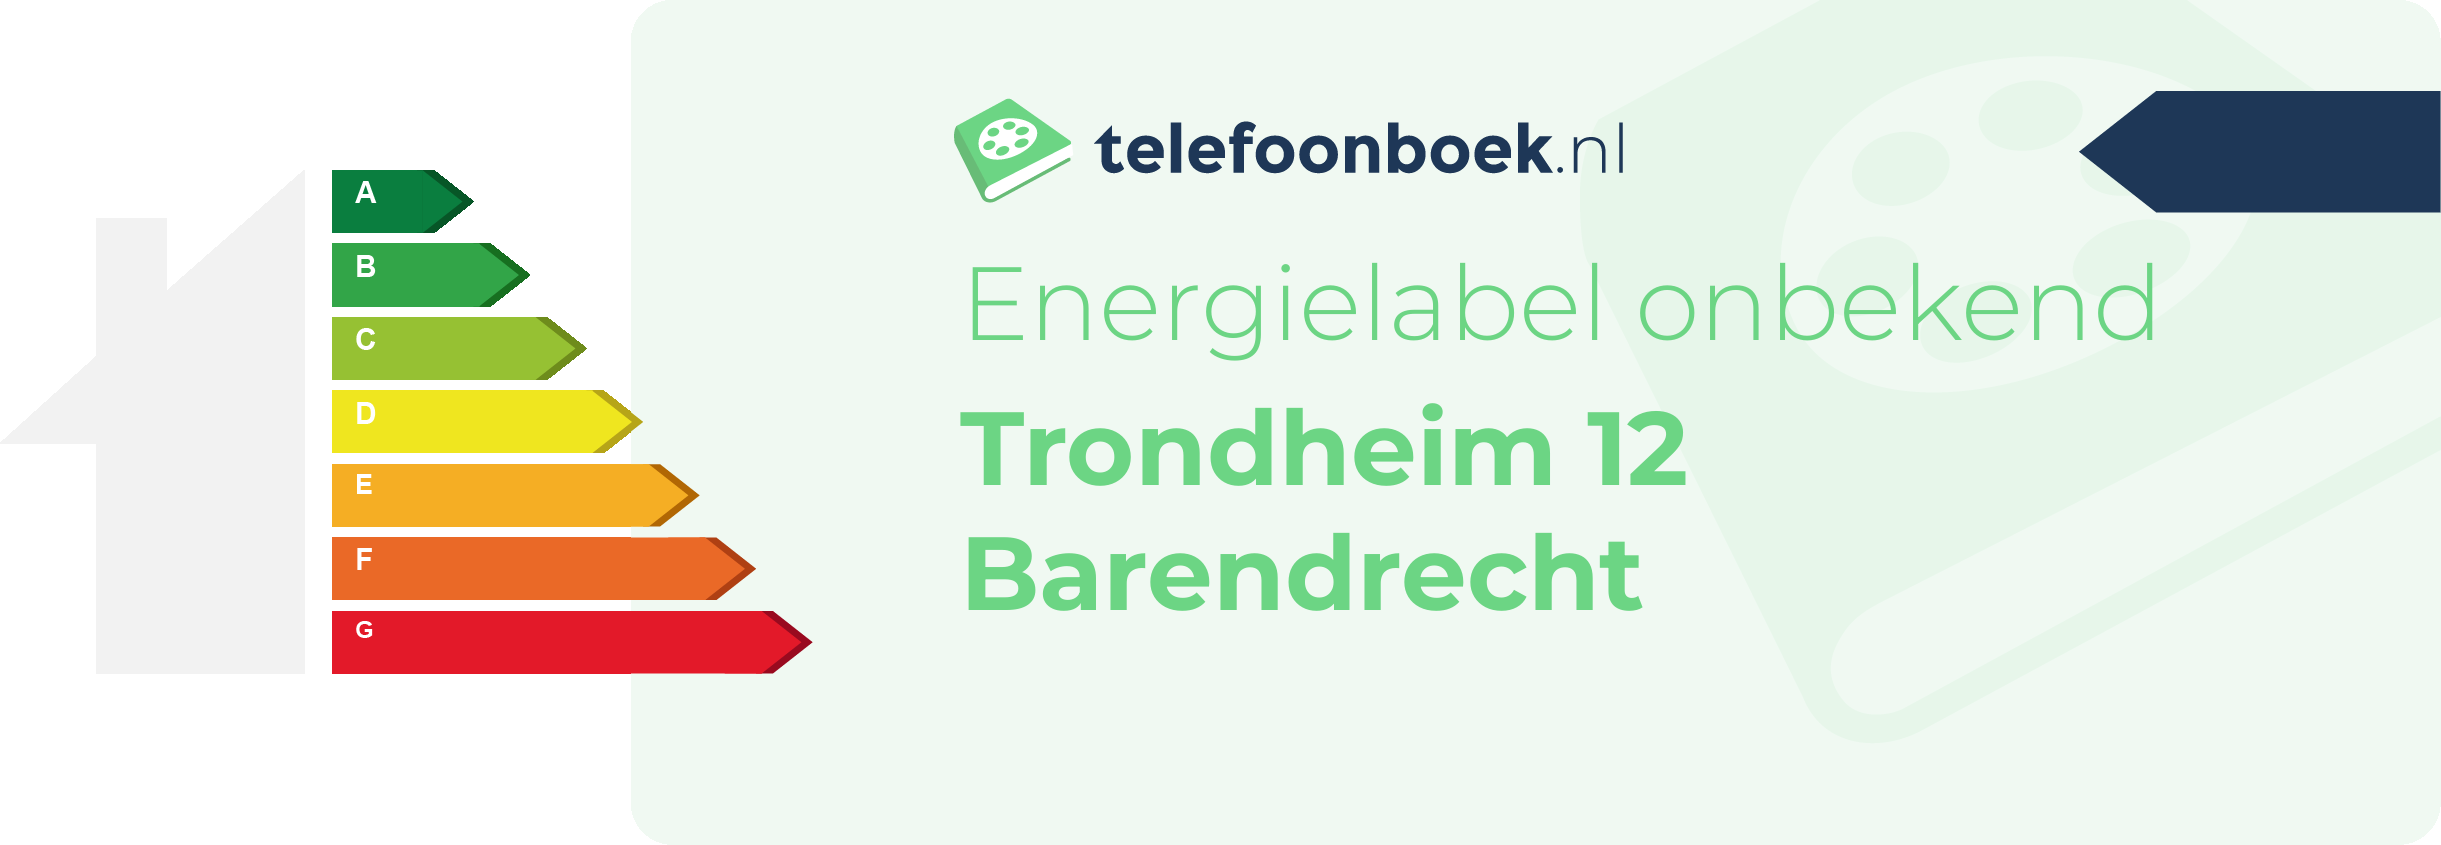 Energielabel Trondheim 12 Barendrecht